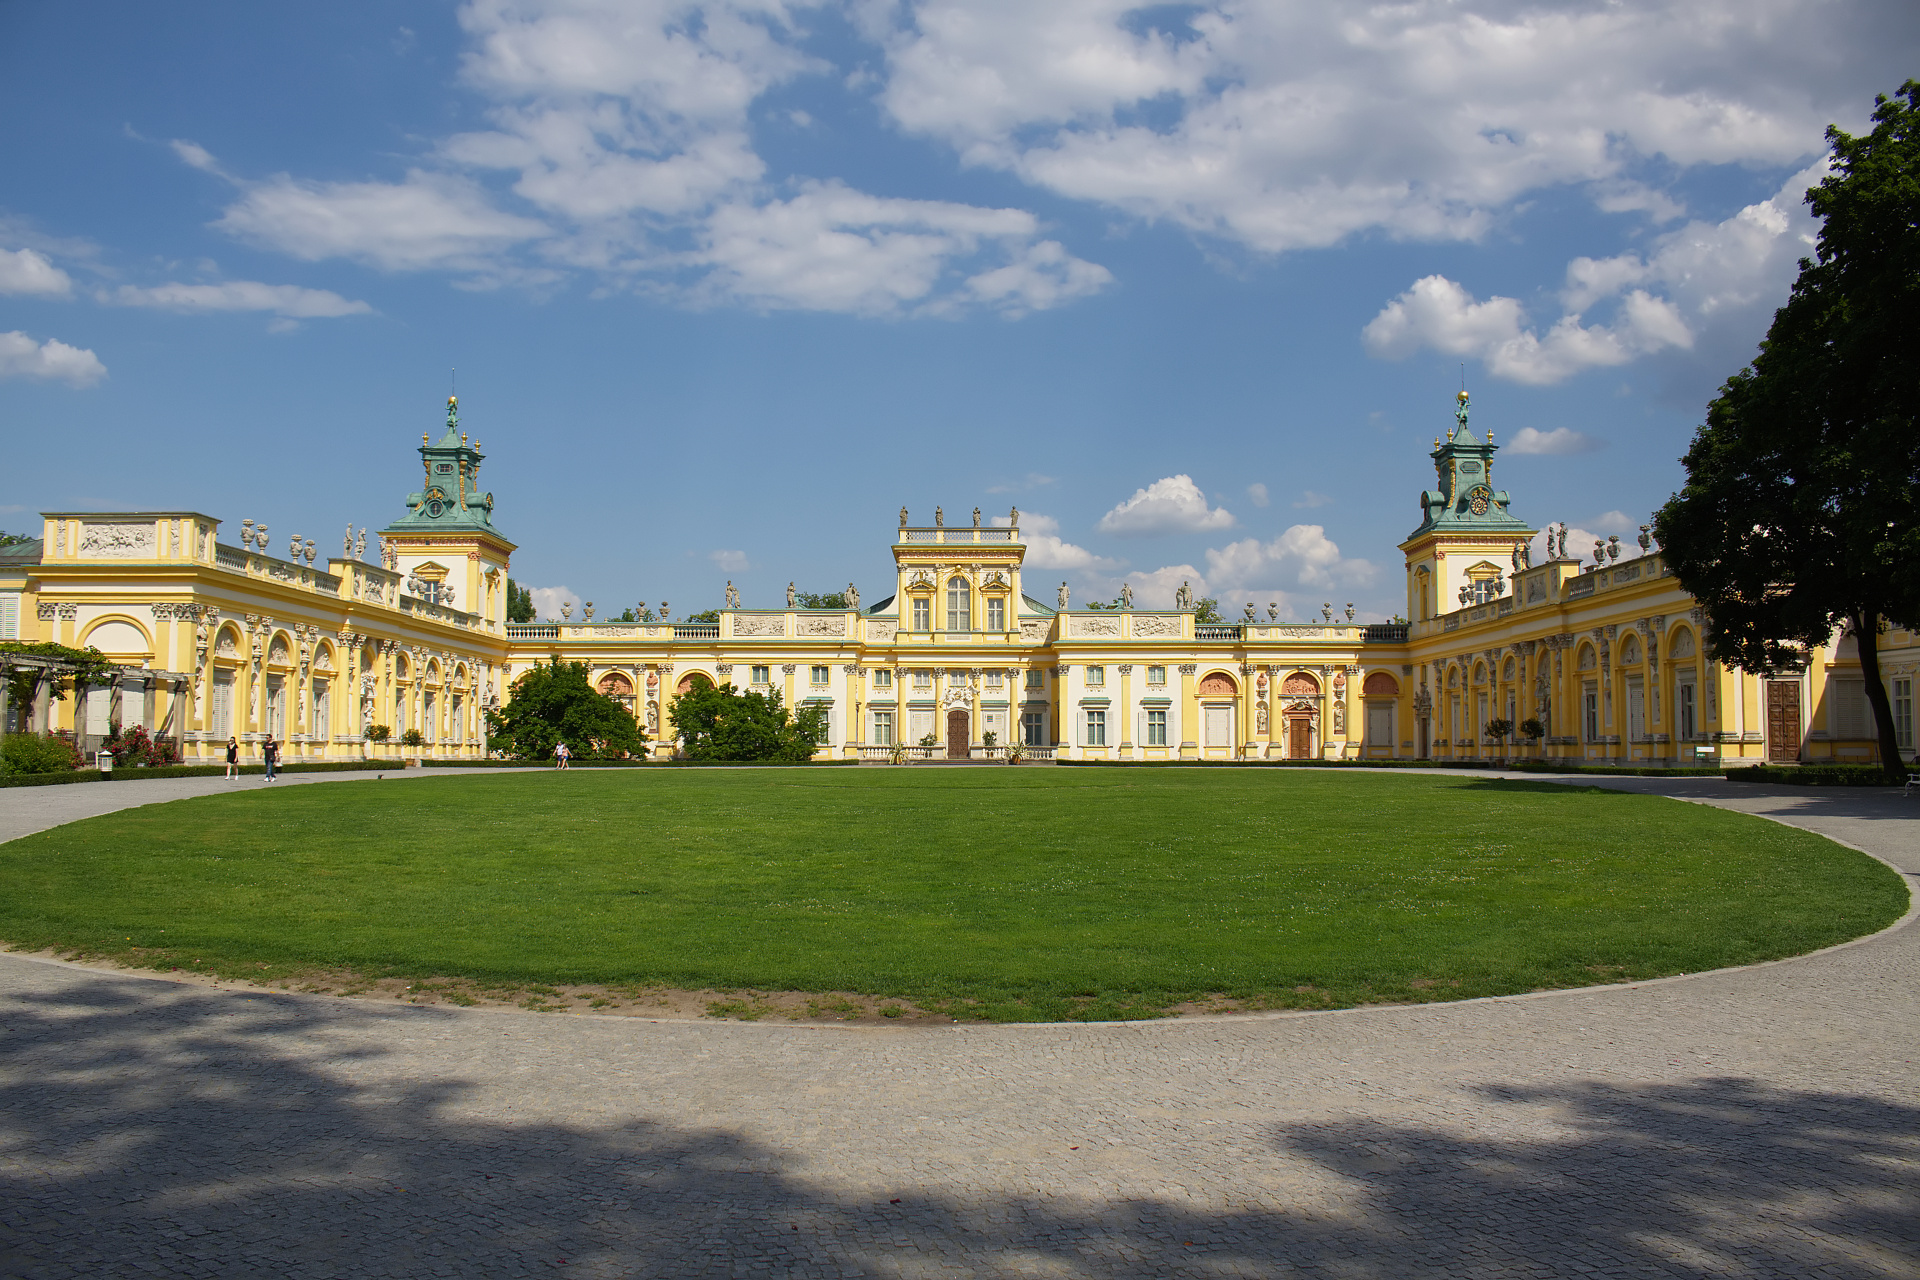 Wilanów Palace (Warsaw)